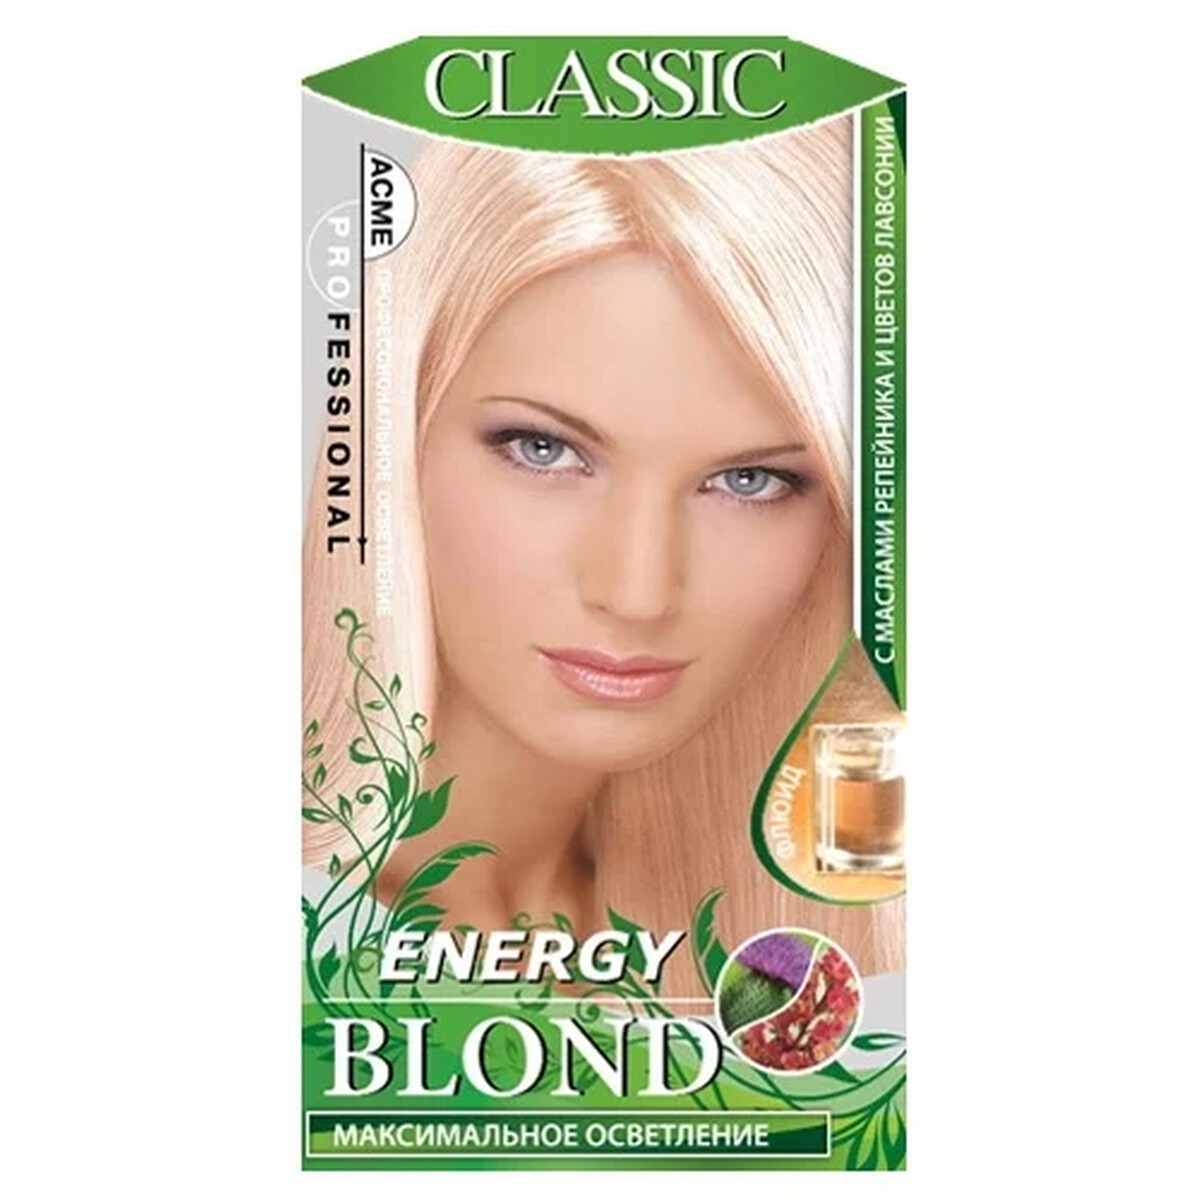 Blonde краска для волос. Осветлитель Acme Color Energy blond. Acme professional Classic осветлитель для волос Energy blond. Краска для волос Energy blond Classic. Осветлитель для волос Acme-professional Energy blond Classic с флюидом.